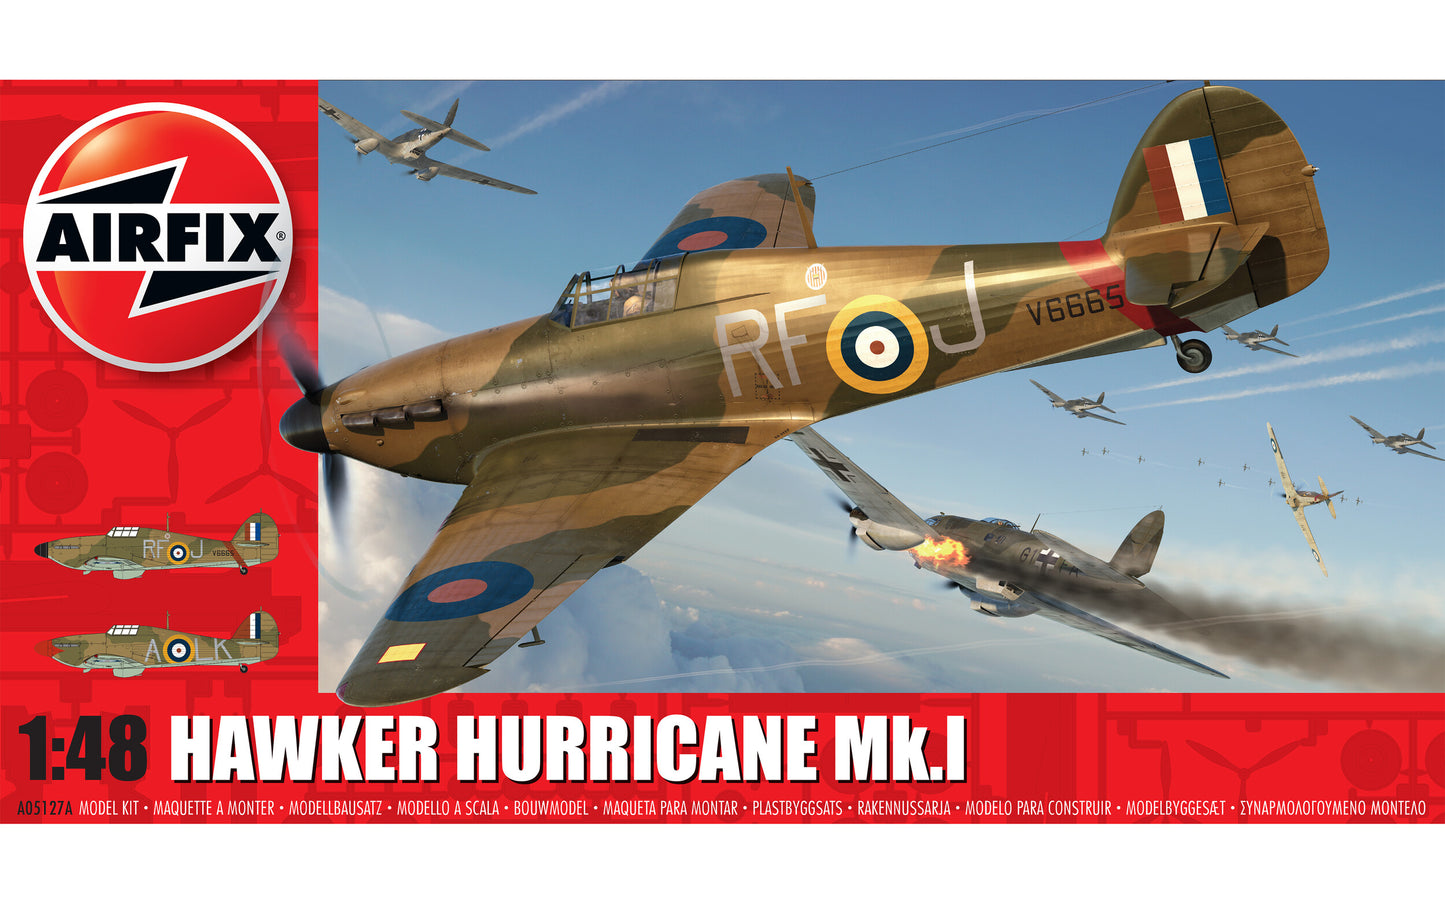 Airfix 1/48th scale Hawker Hurricane Mk.1